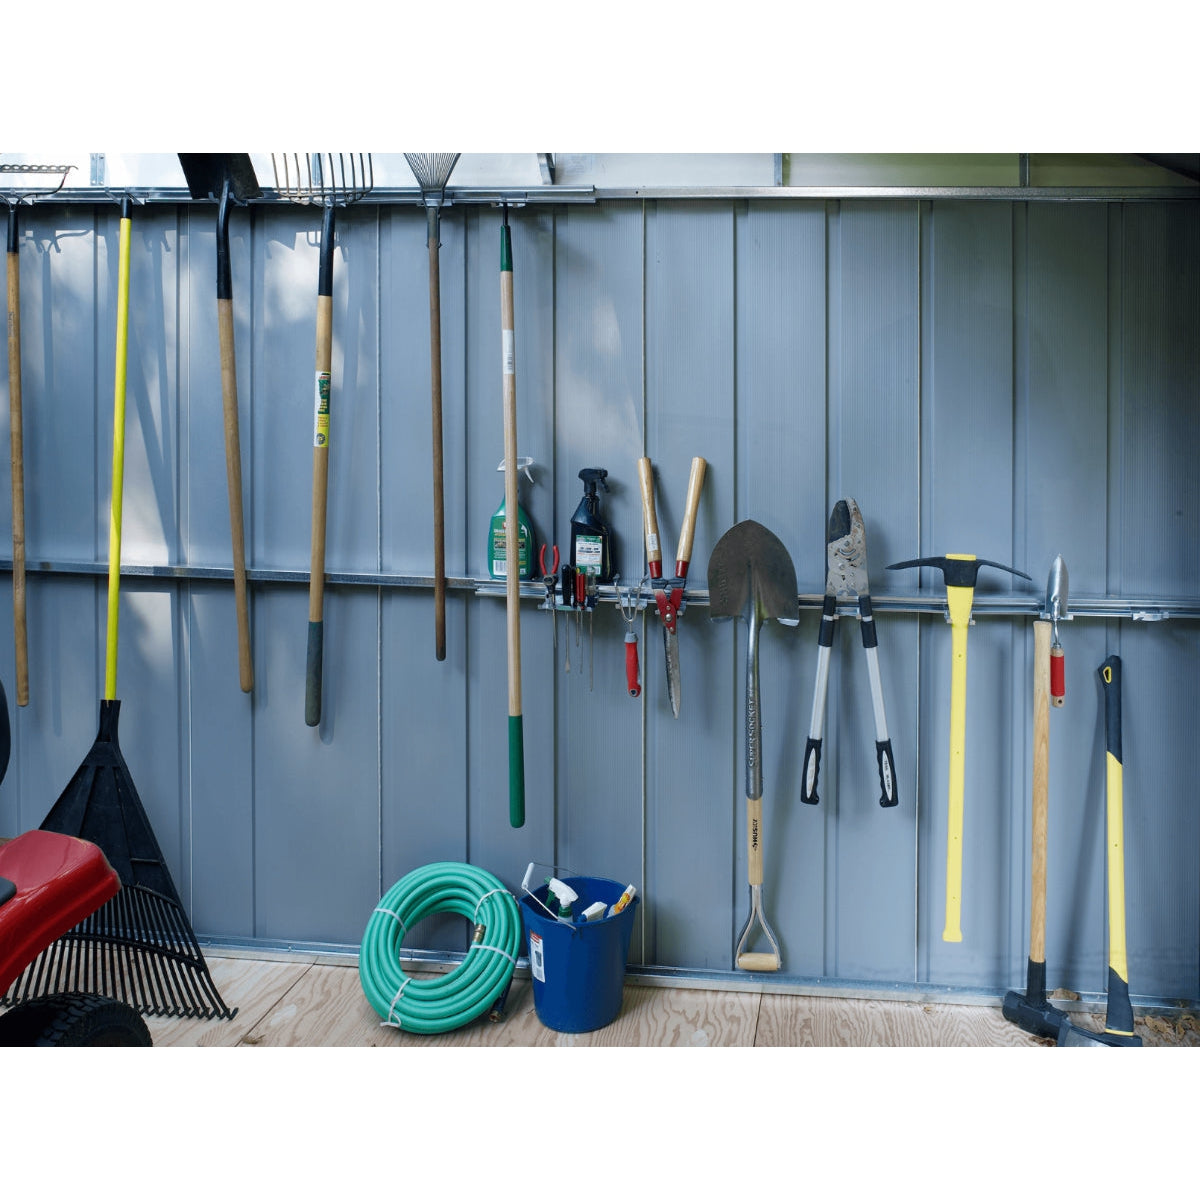 Arrow Murryhill Steel Garage Shed 14 x 21 ft.-Delightful Yard